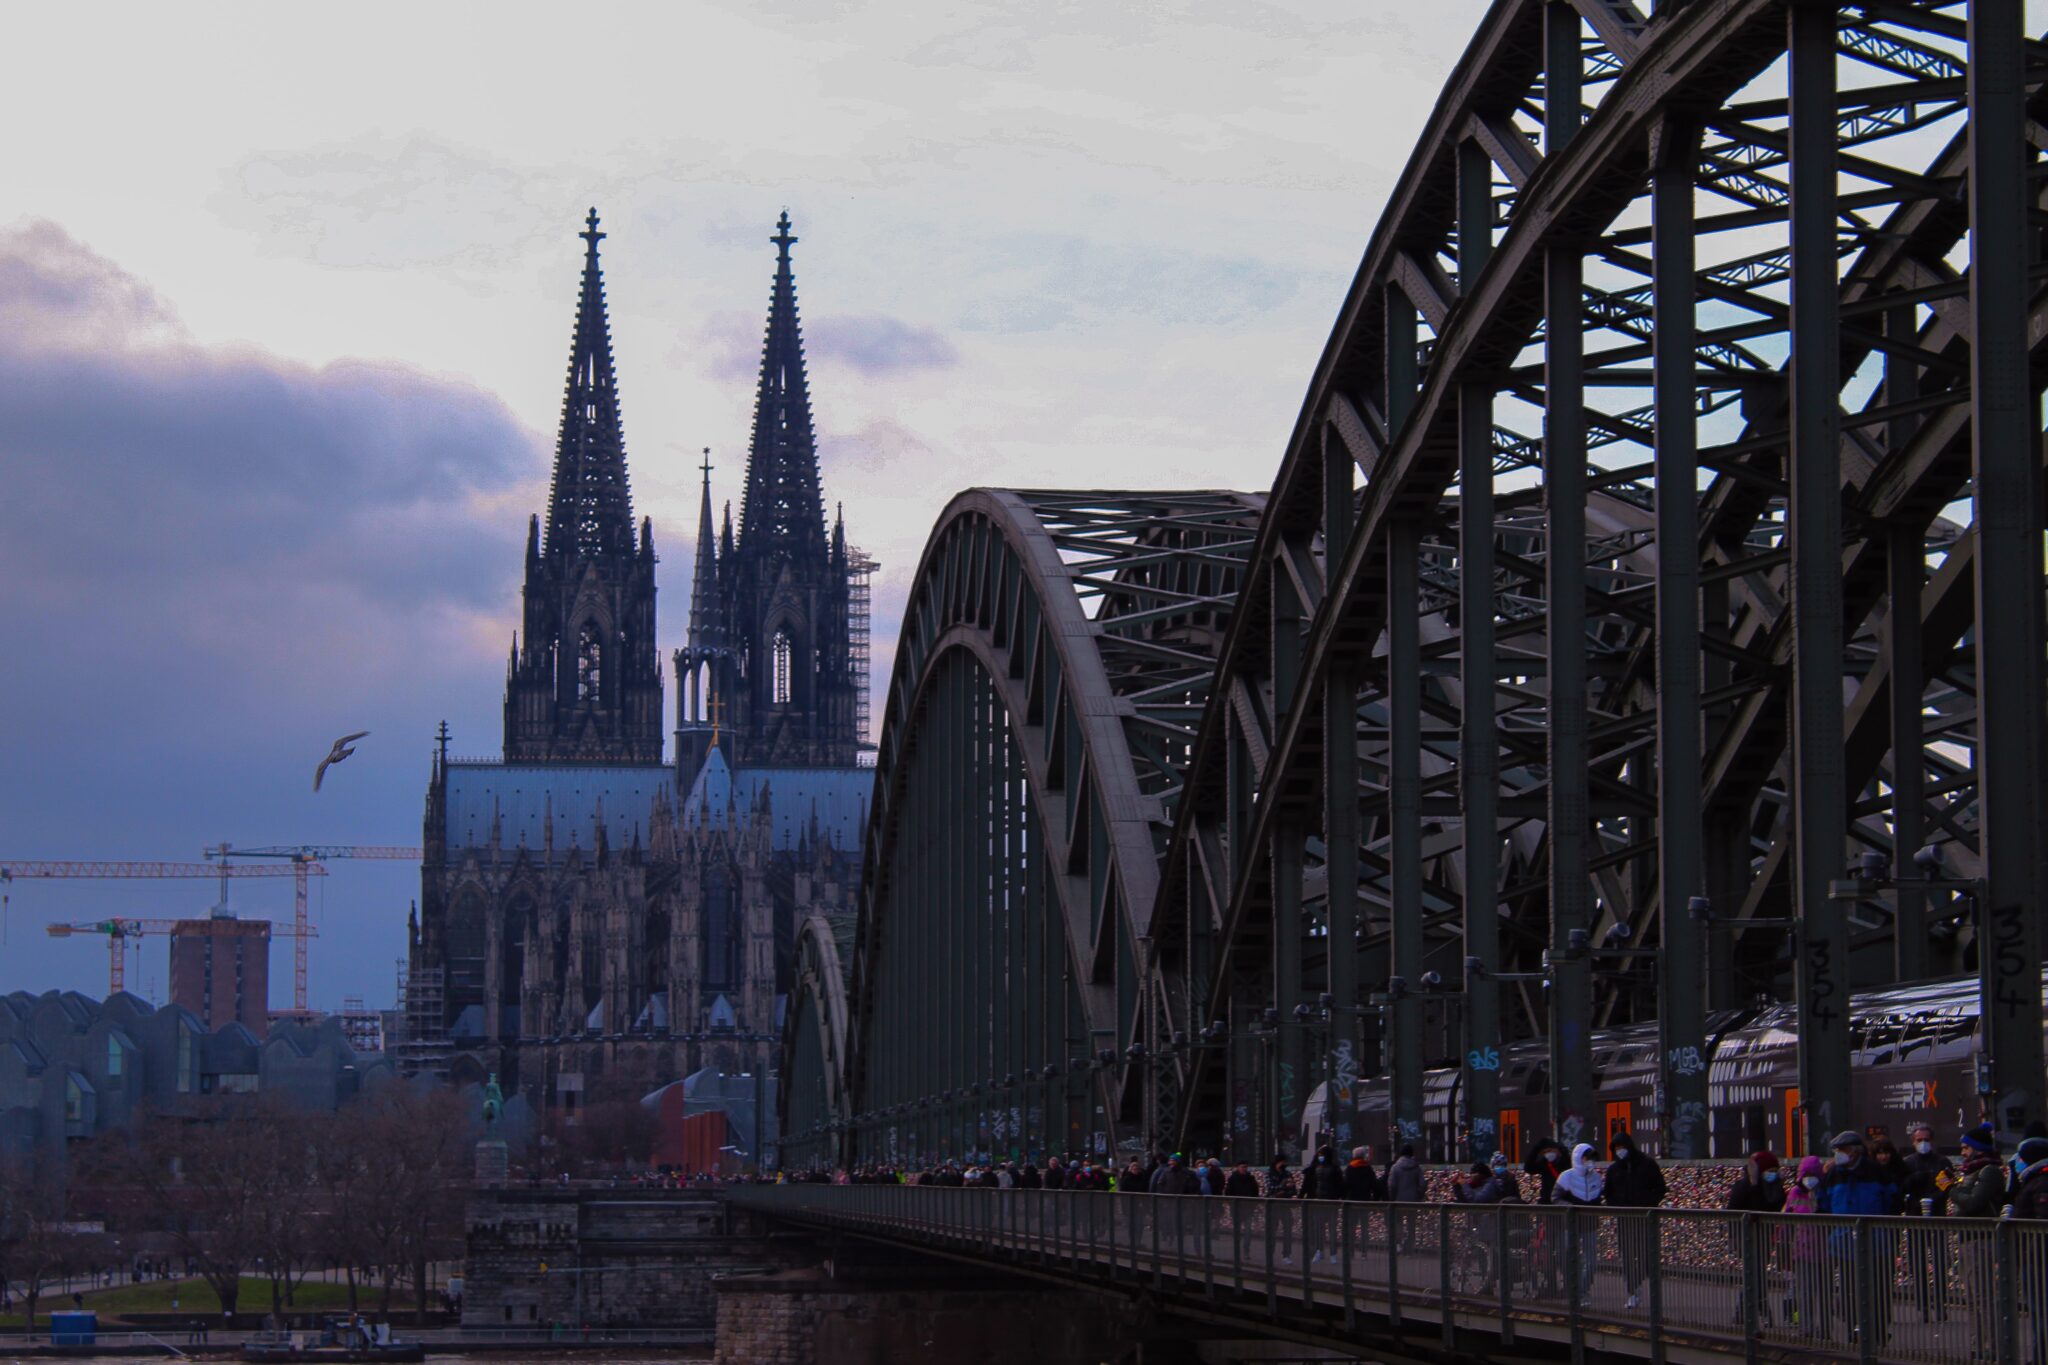 Cologne retire la cathédrale de son logo.  Christianisme nuisible à l’image de la ville ?